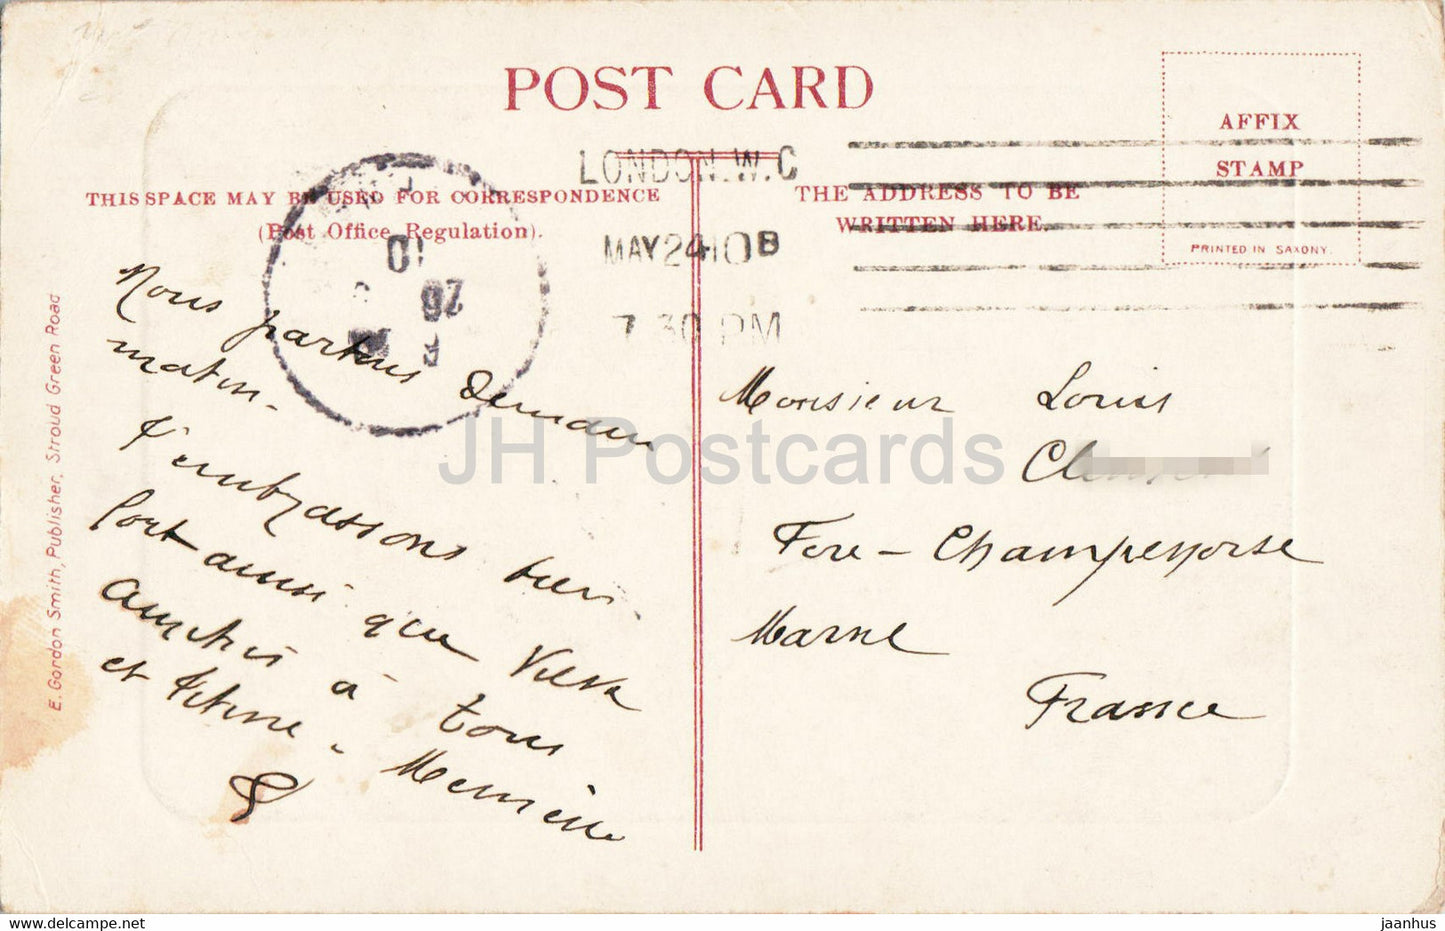 Londres - St Pauls de Cheapside - carte postale ancienne - Angleterre - 1910 - Royaume-Uni - utilisé